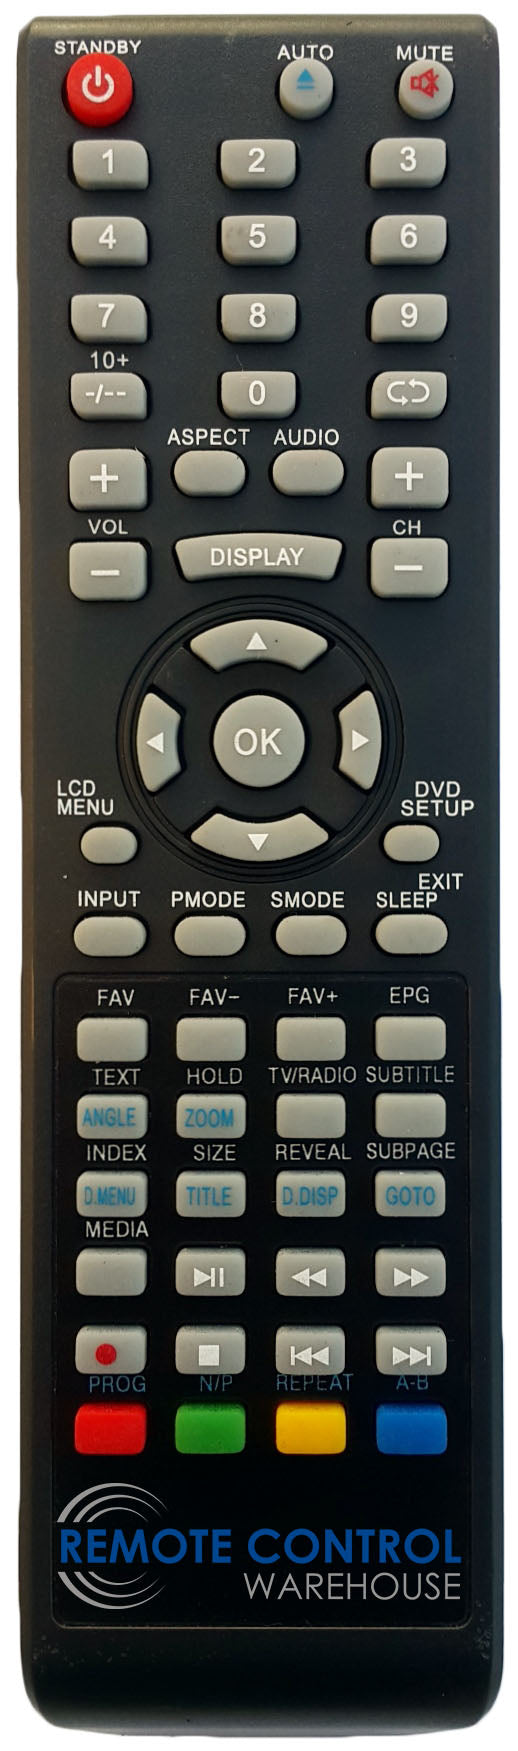 NEONIQ ELF215A0WF3DF LCD TV Replacement Remote Control